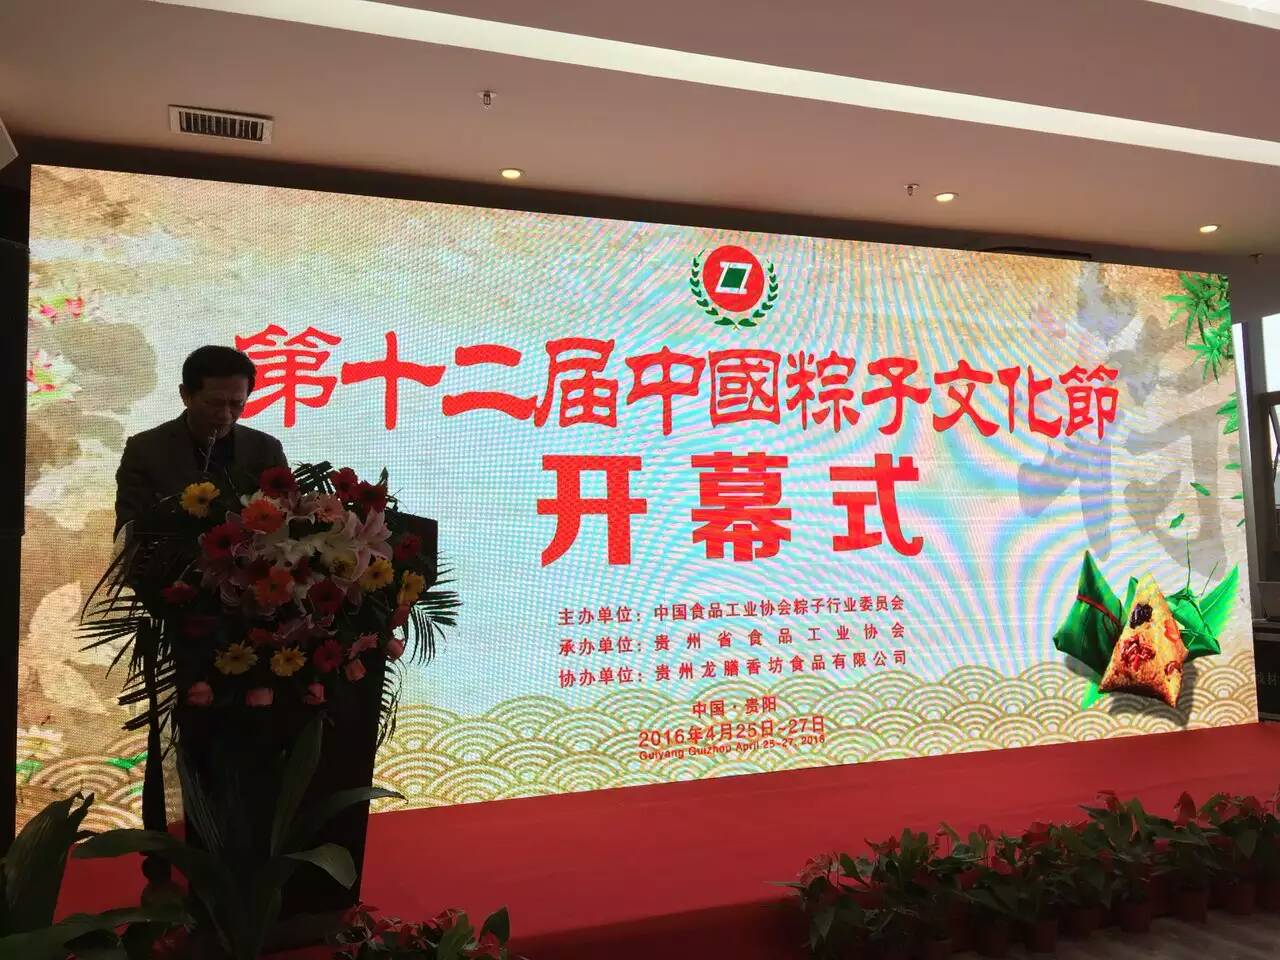 熱烈祝賀合口味粽子兩款產品榮獲第十二屆中國粽子文化節特等獎！